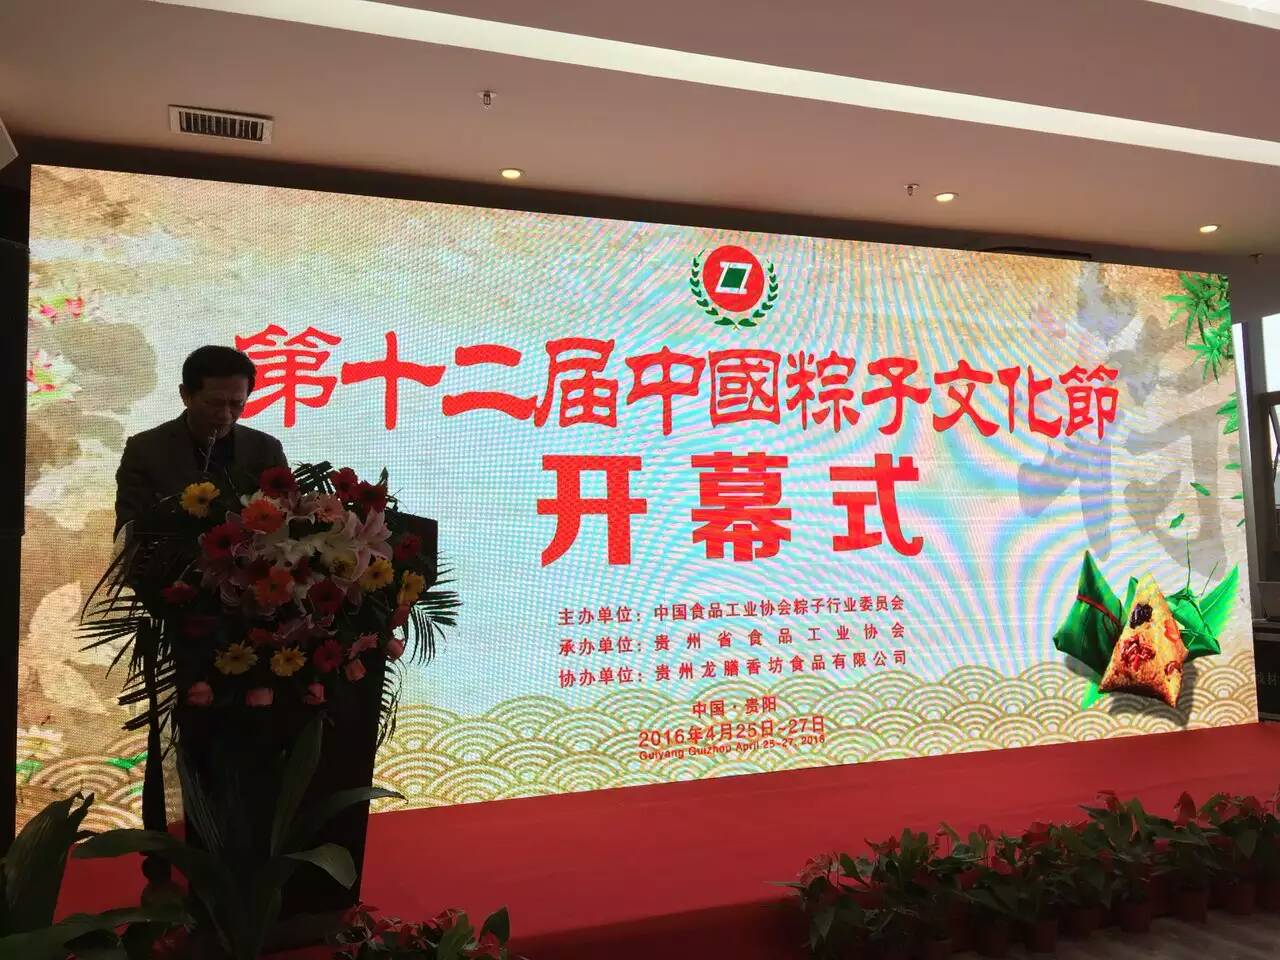 熱烈祝賀合口味粽子兩款產品榮獲第十二屆中國粽子文化節特等獎！